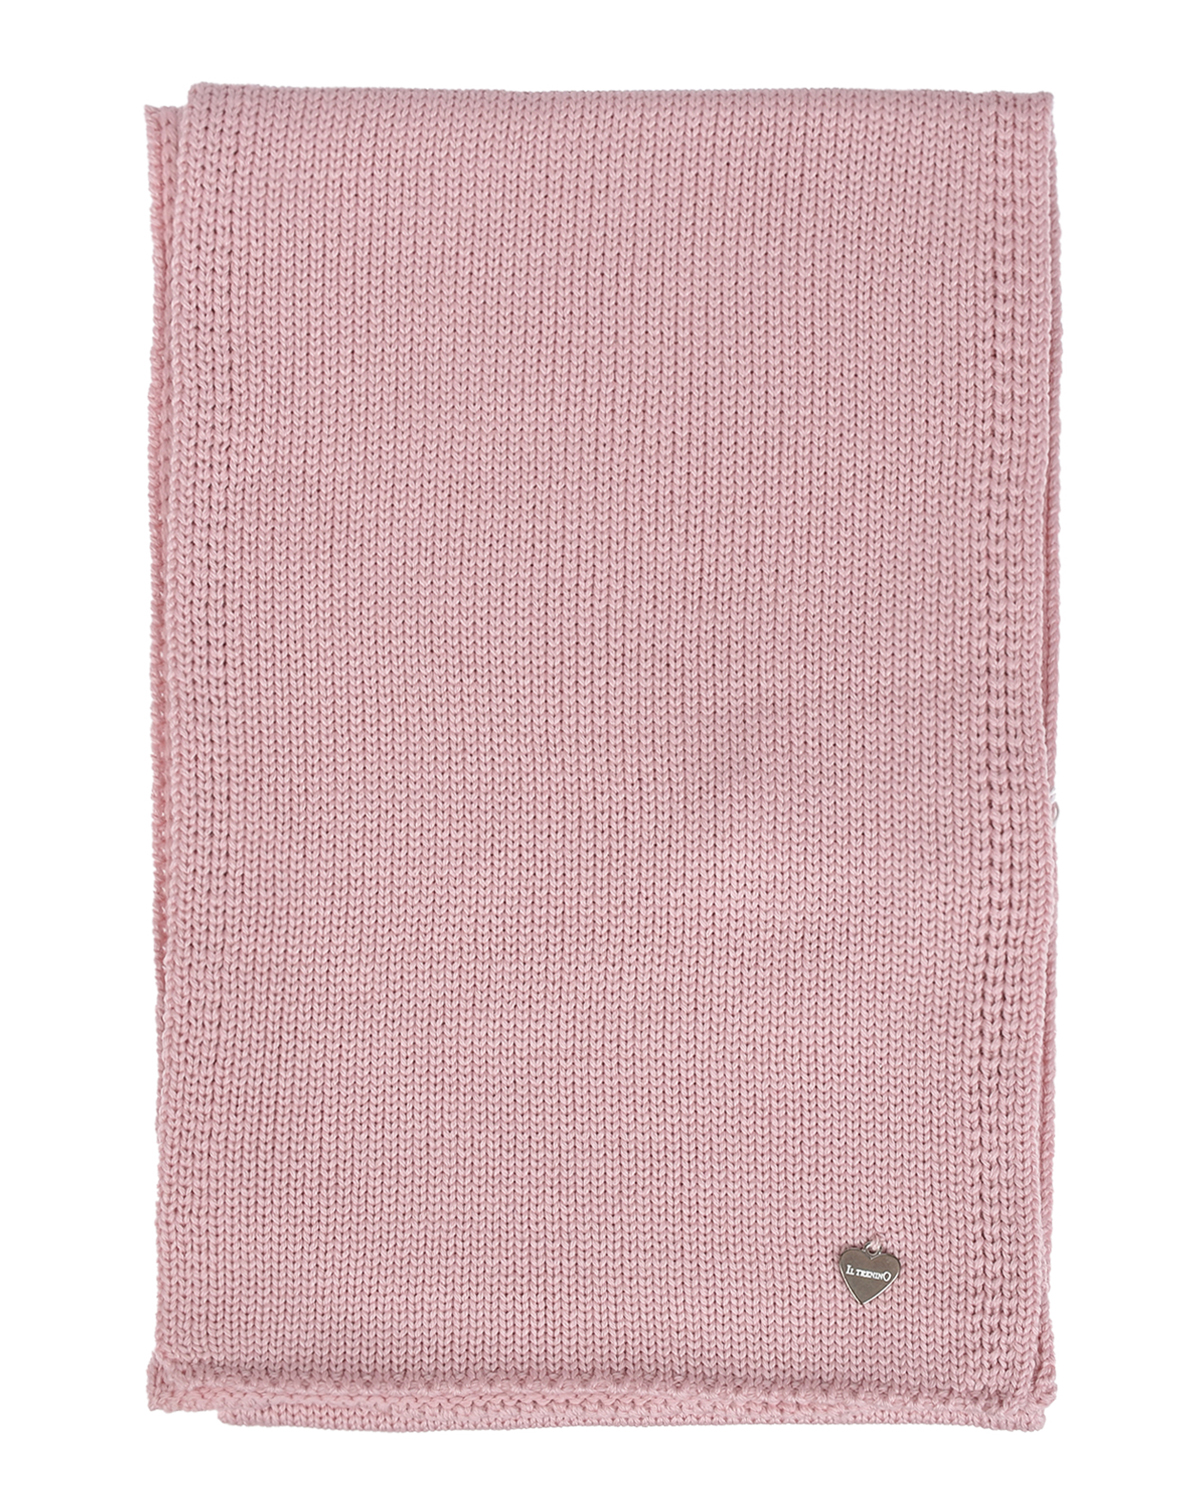 Розовый шарф из шерсти, 20х140 см Il Trenino детский, размер unica - фото 2